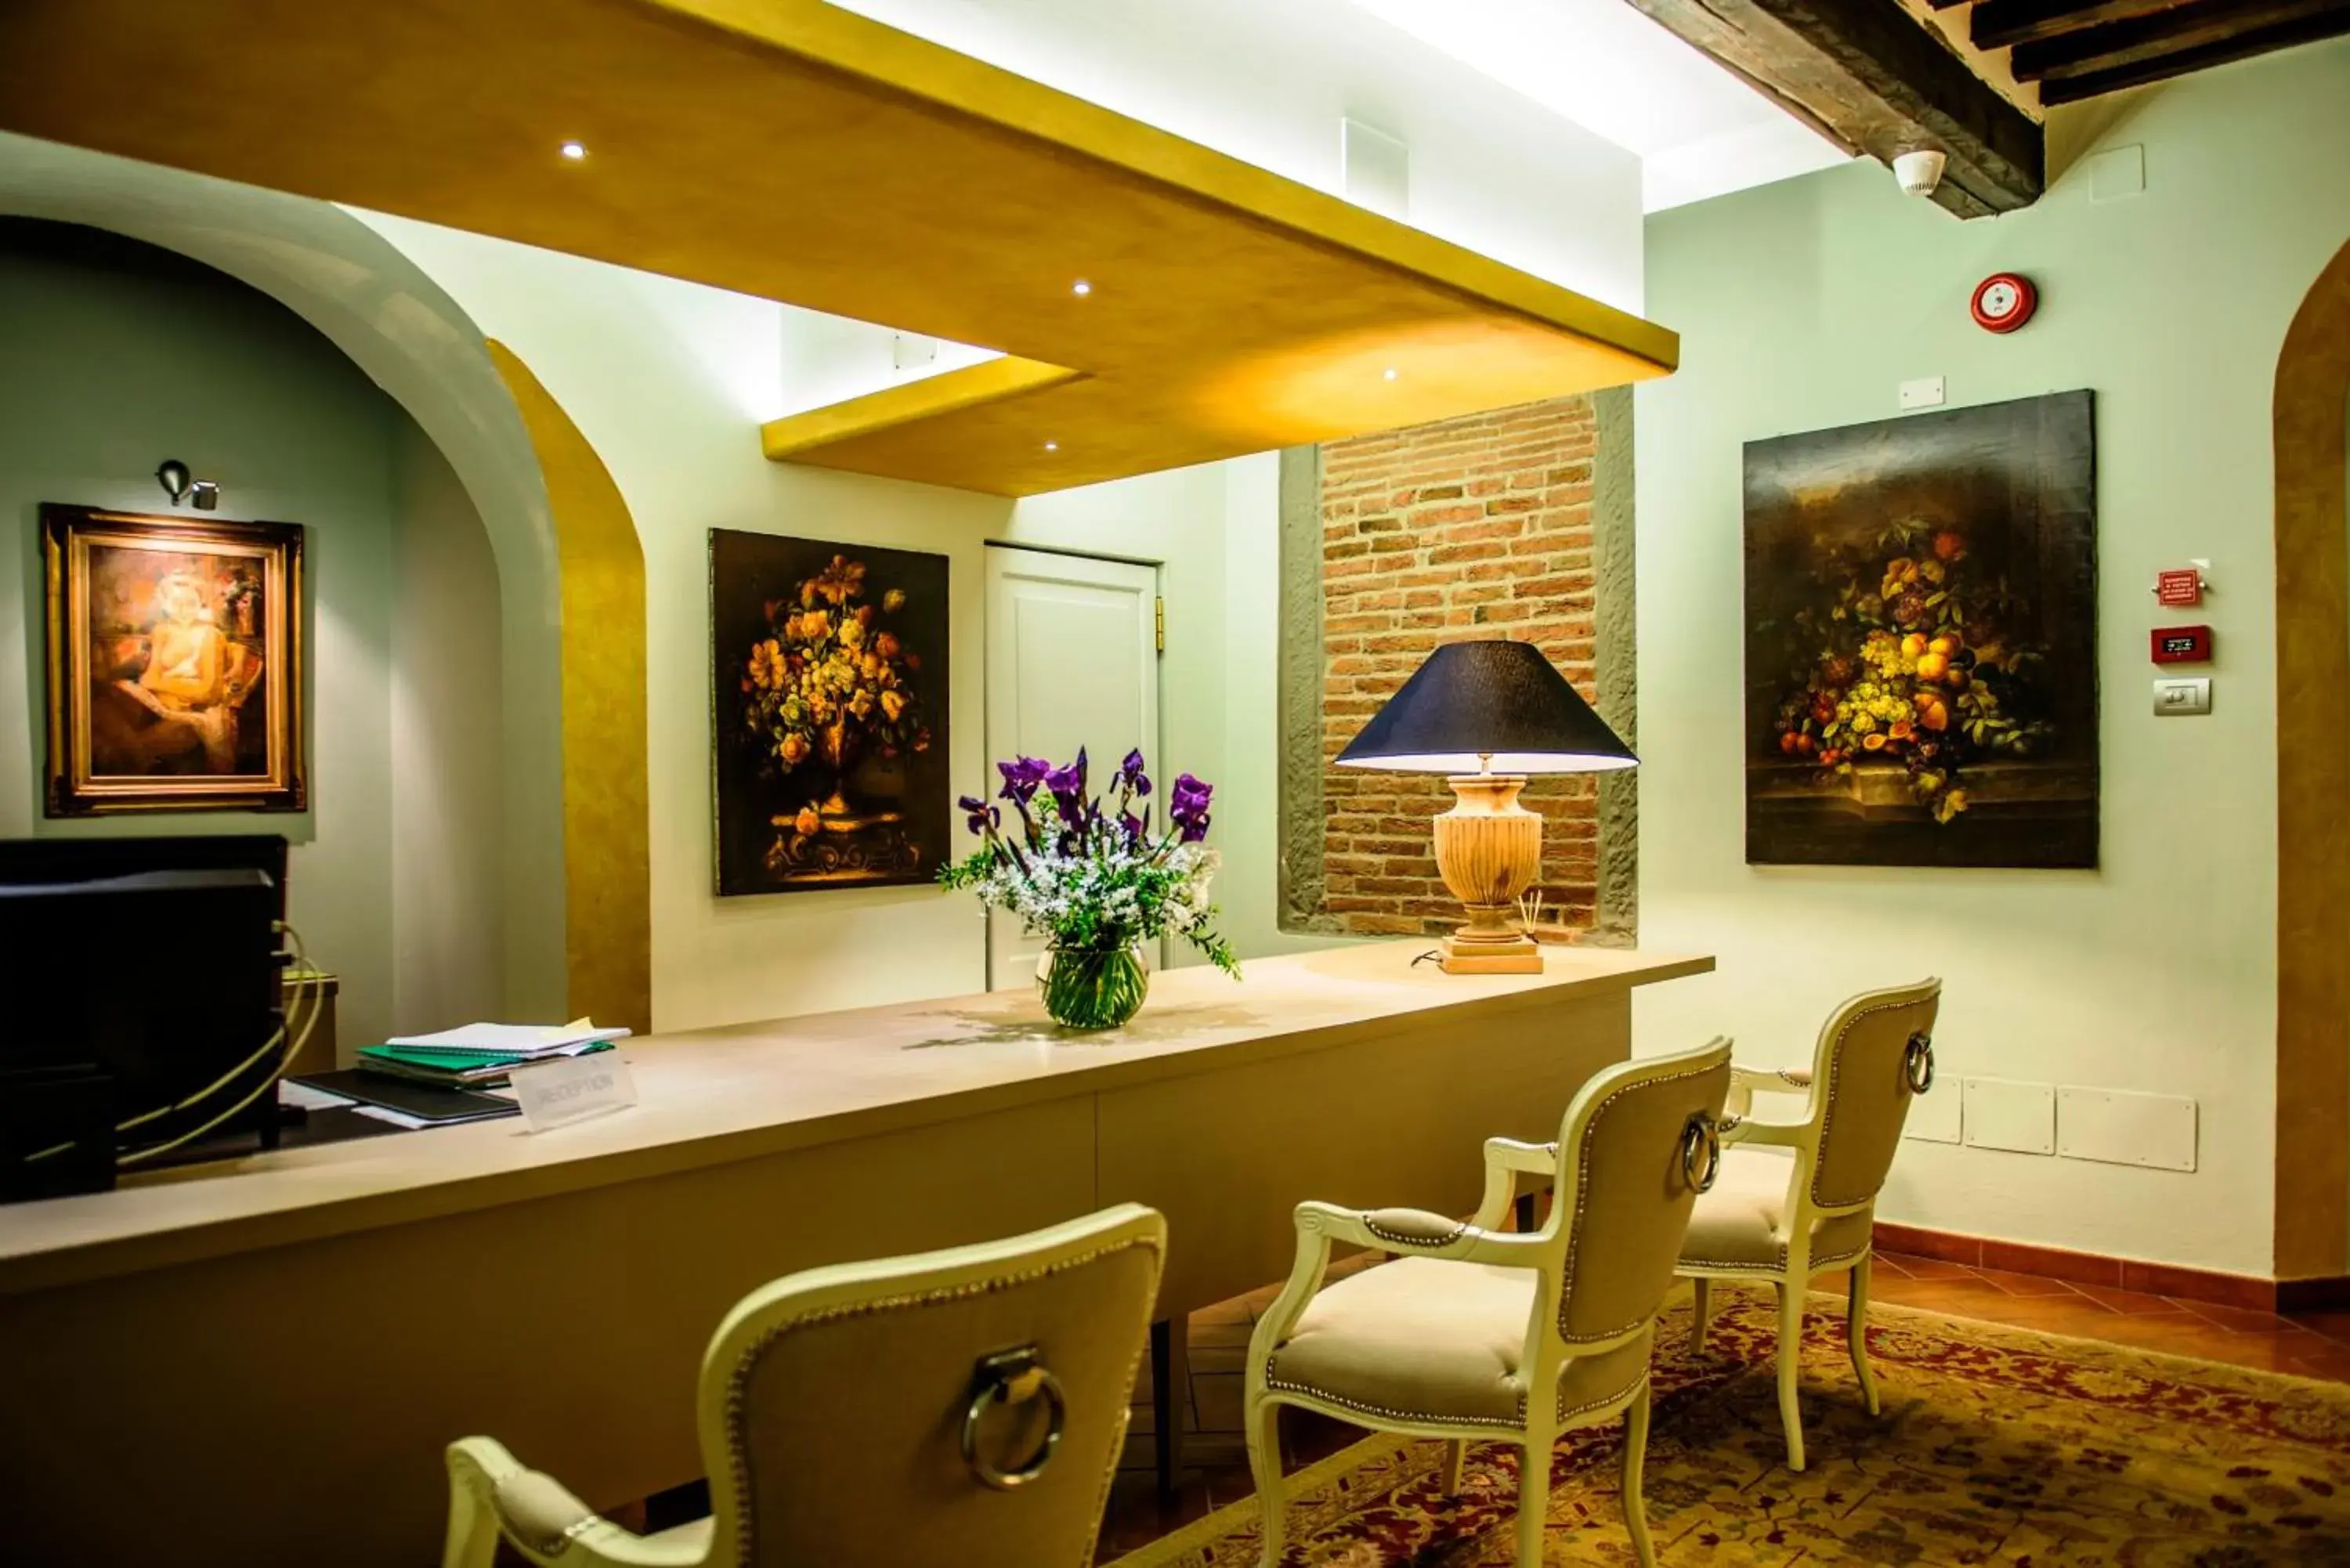 Lobby or reception in Cortona Resort & Spa - Villa Aurea